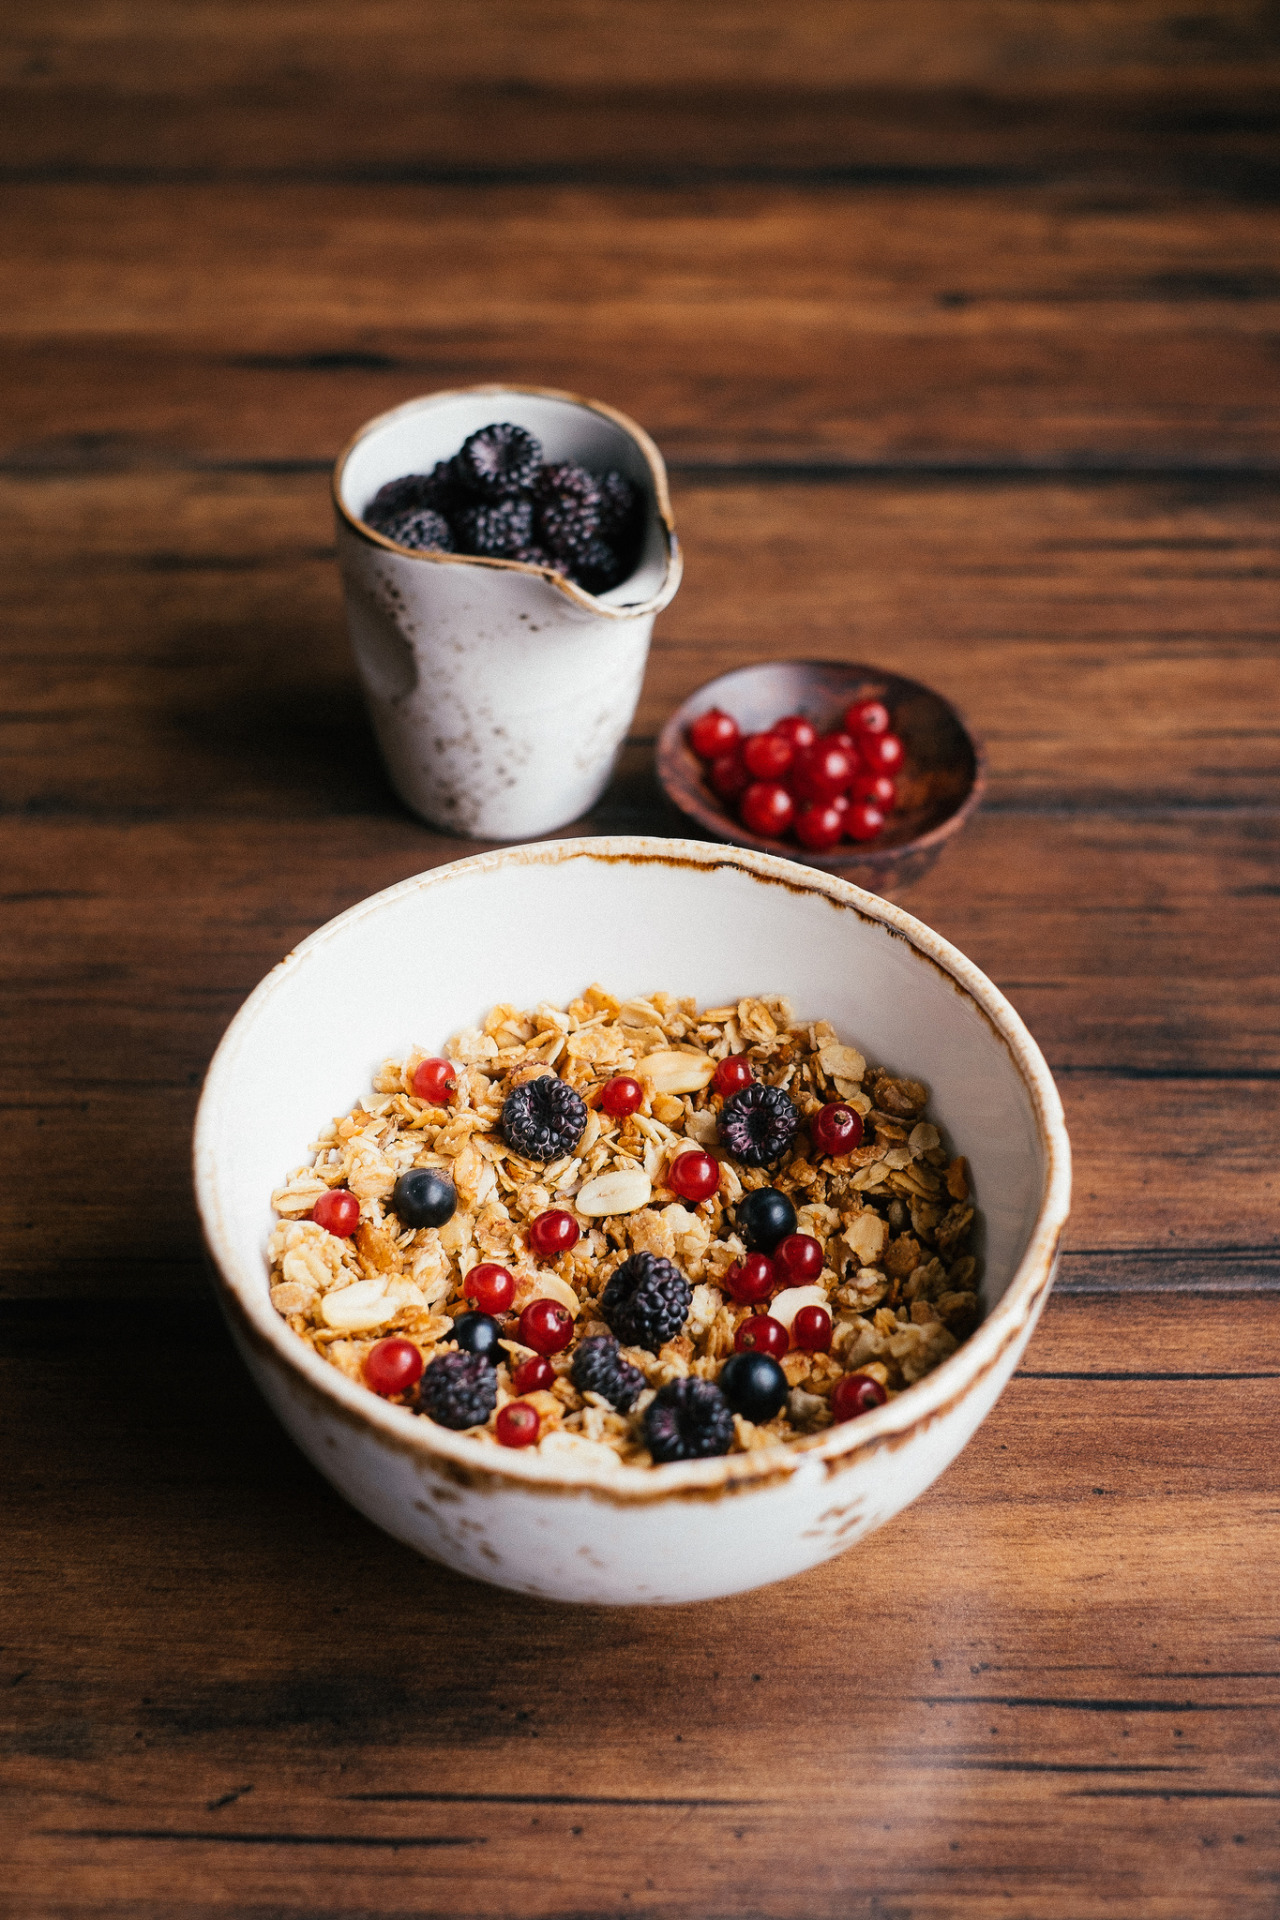 food photo healthy meal berries diet fresh breakfast tasty plate